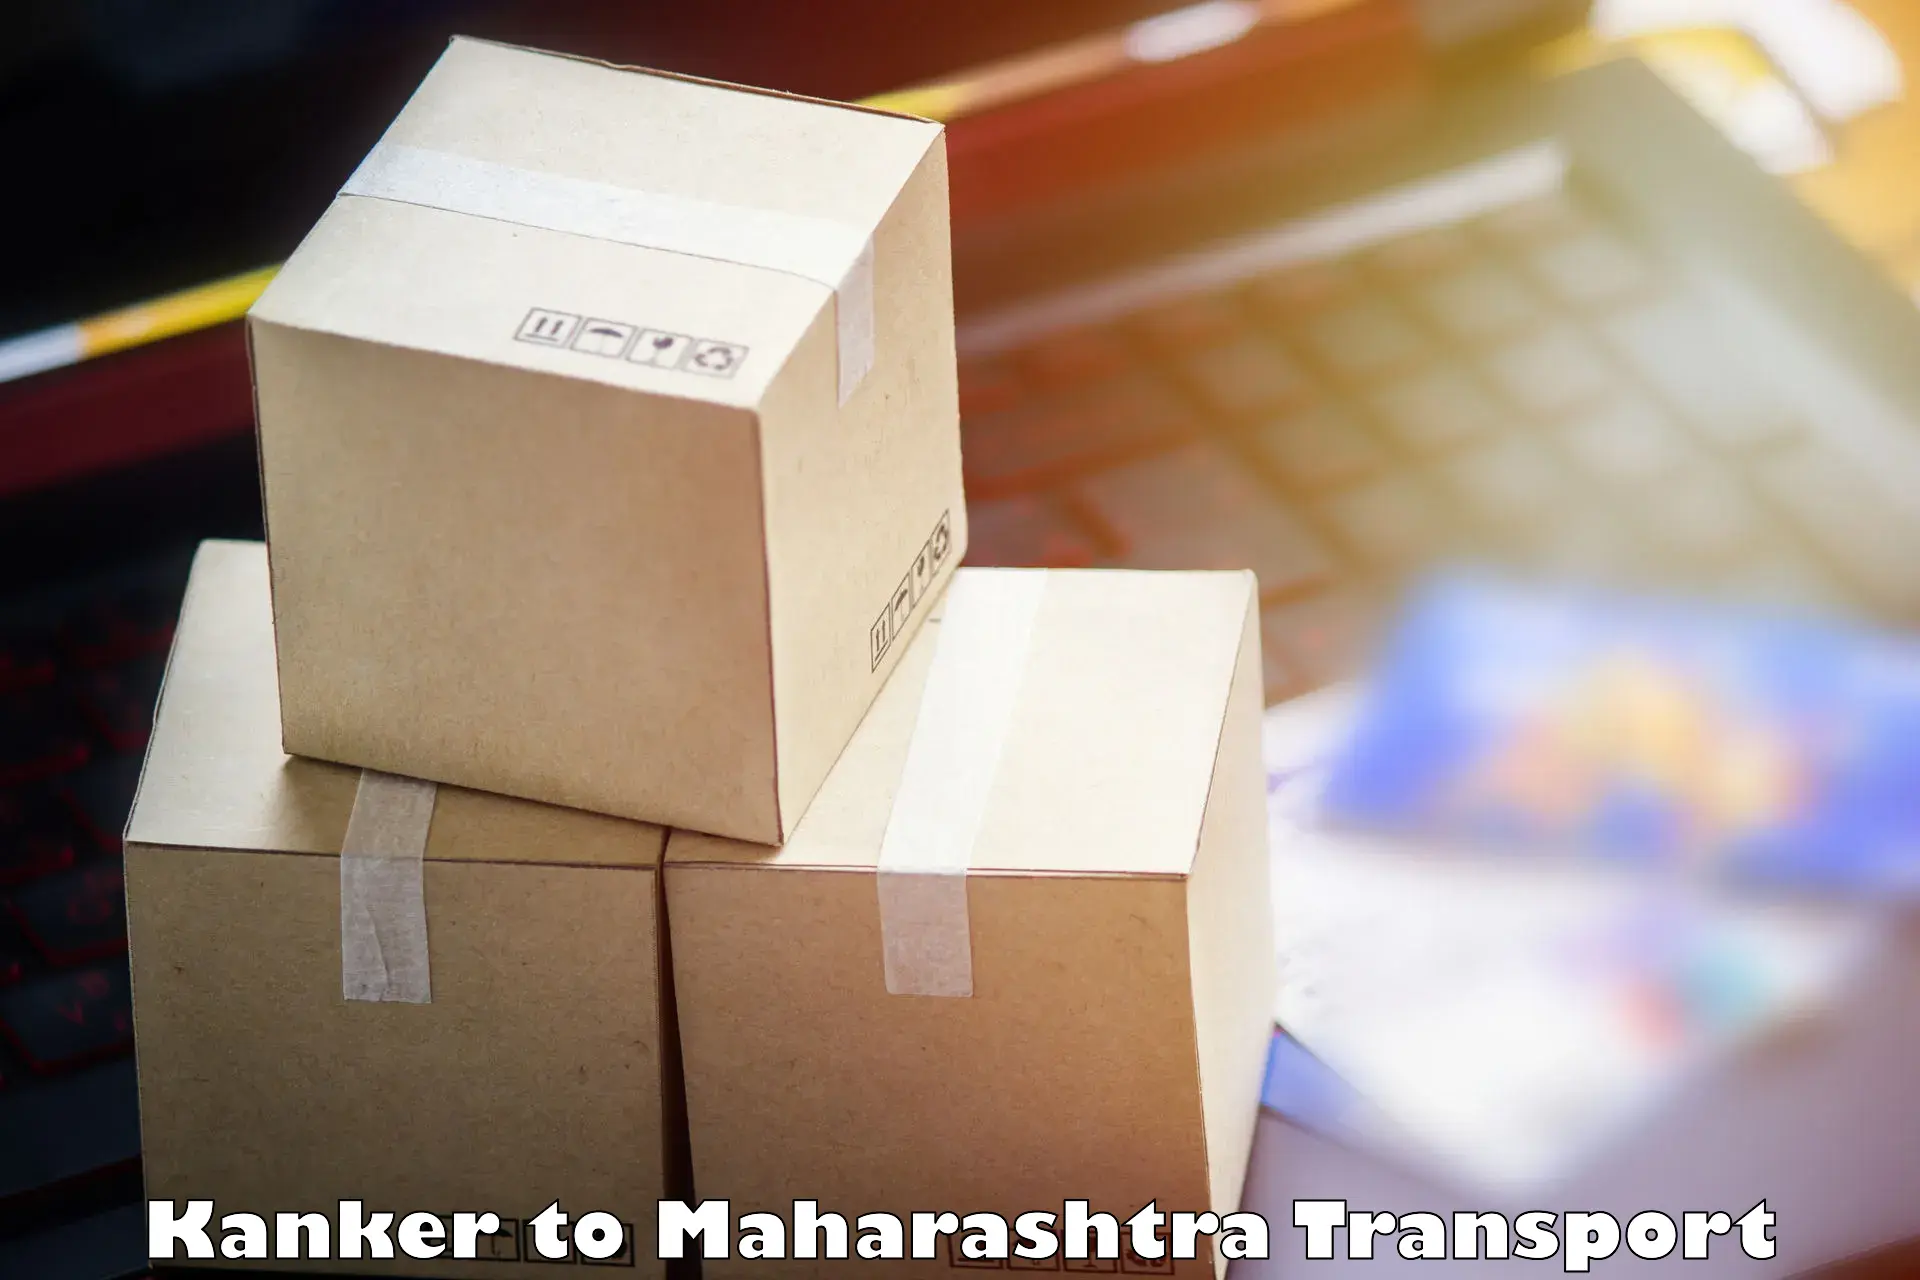 Pick up transport service Kanker to NIT Nagpur